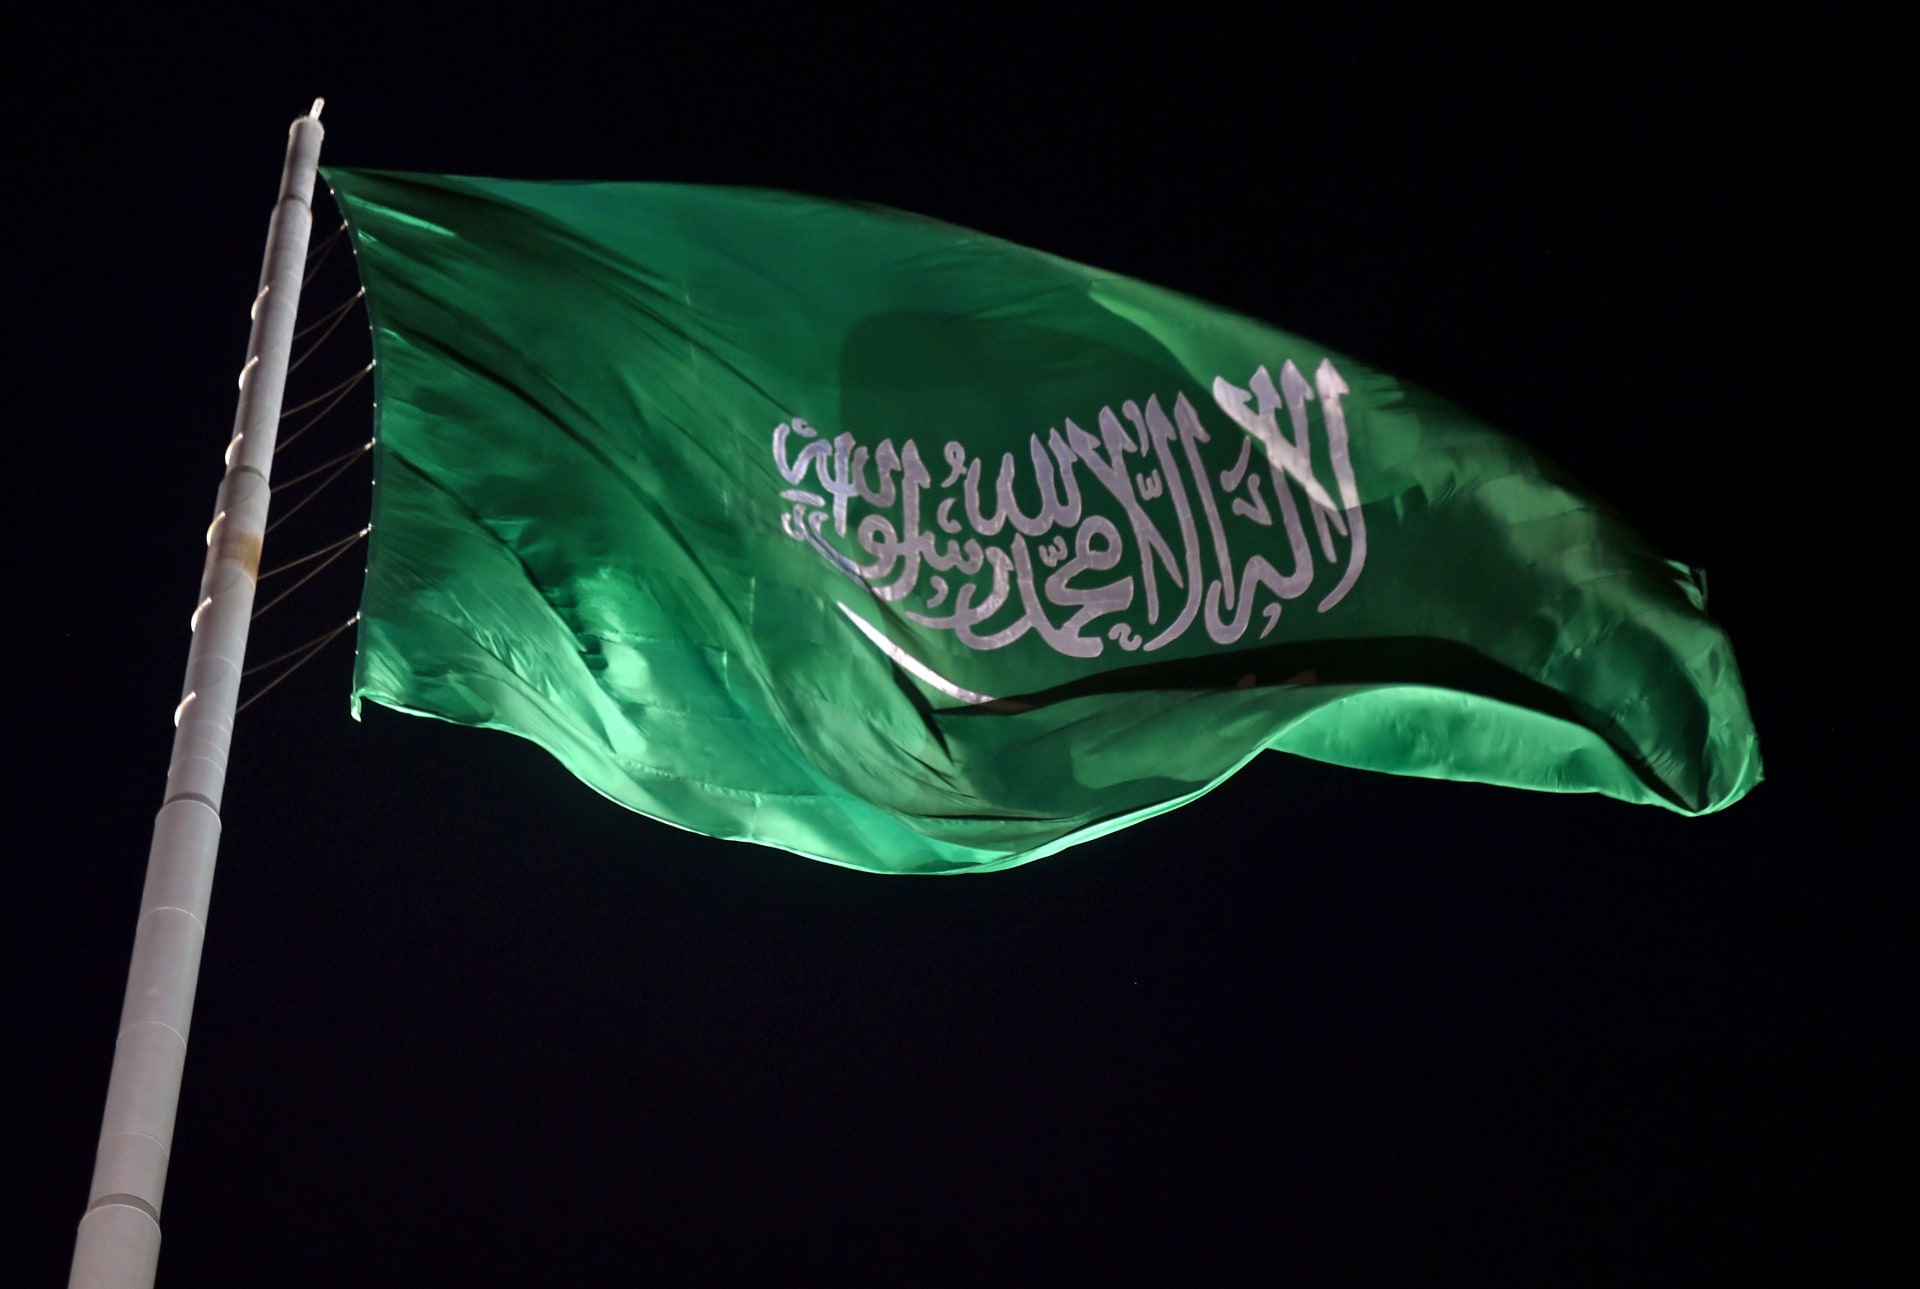   باحث سعودي يعلق على انتقاد محمد العيسى: الإخوان والقاعدة يسيئون له